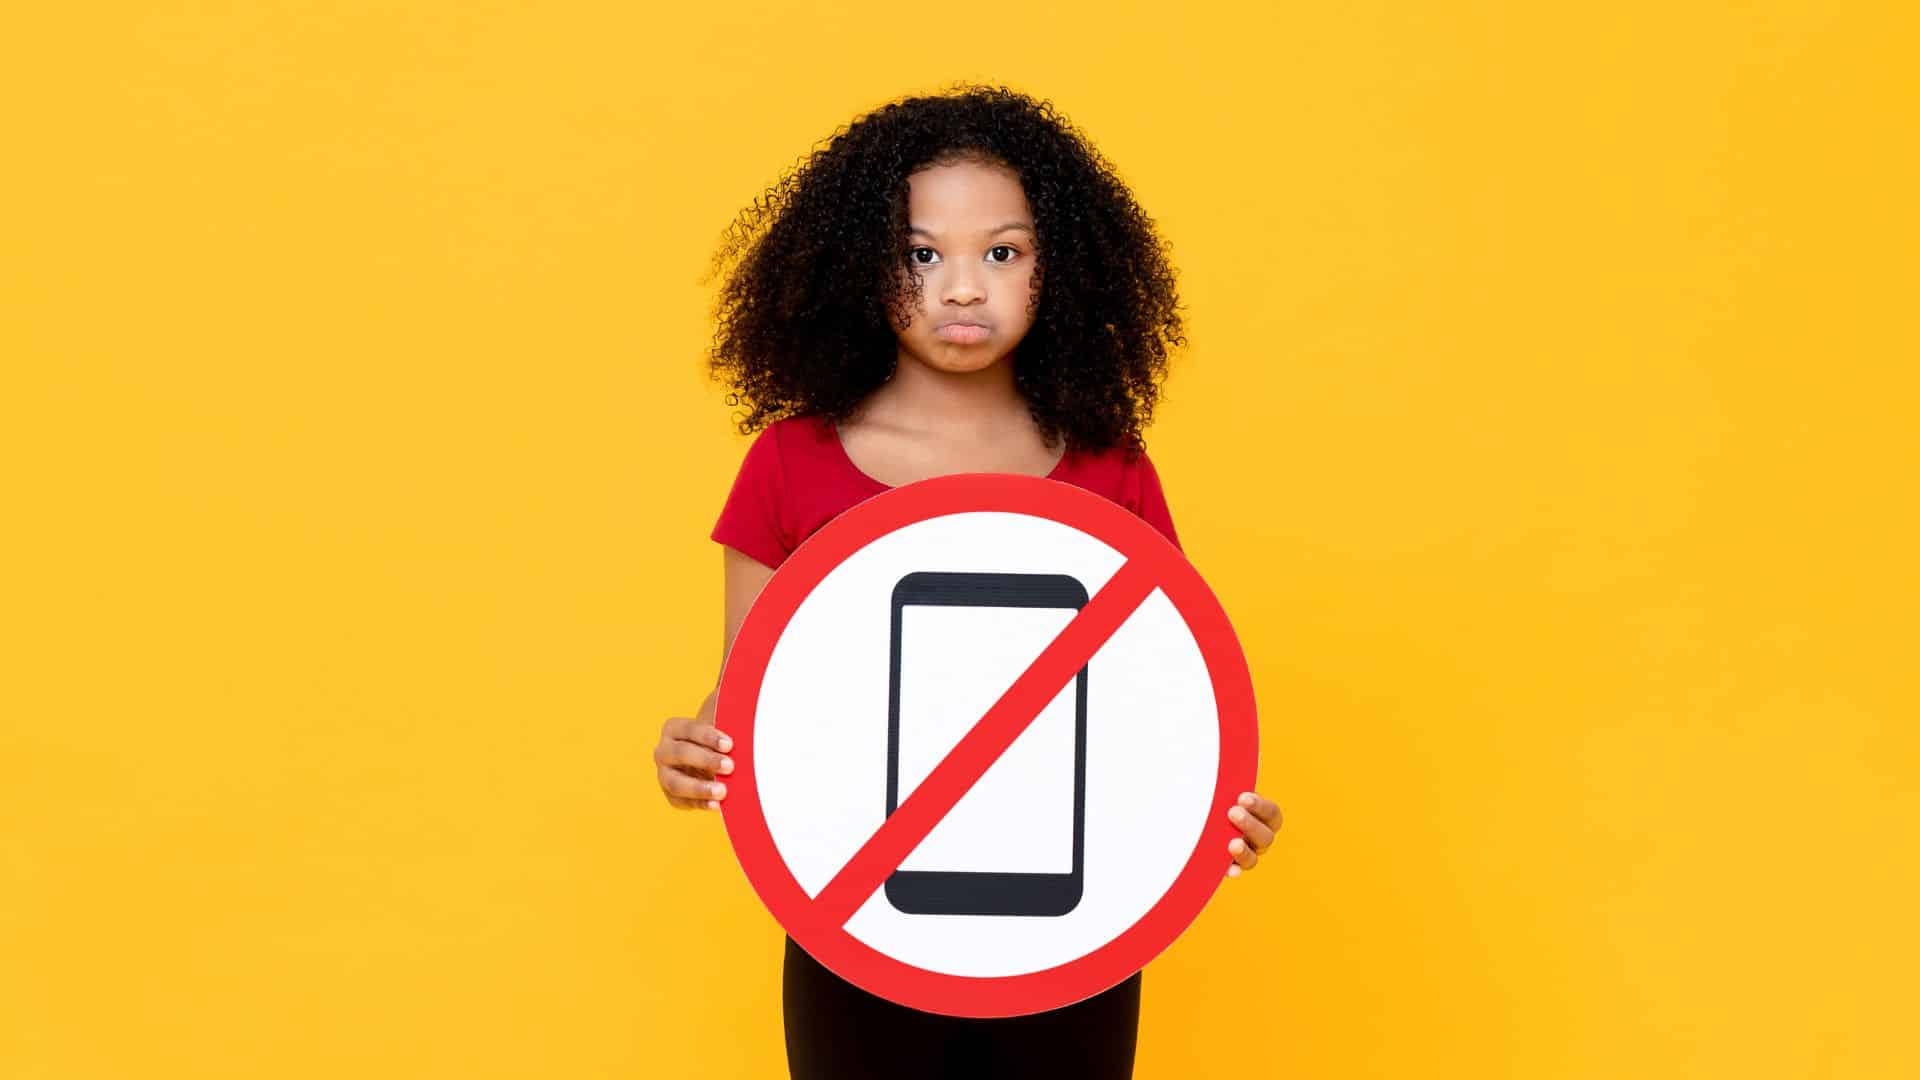 Uma mulher segurando uma placa que contém uma ilustração de um celular, e, sobrepondo-se a ela, uma faixa vermelha cuja ideia é indicar a proibição de algo. Neste caso, o celular.